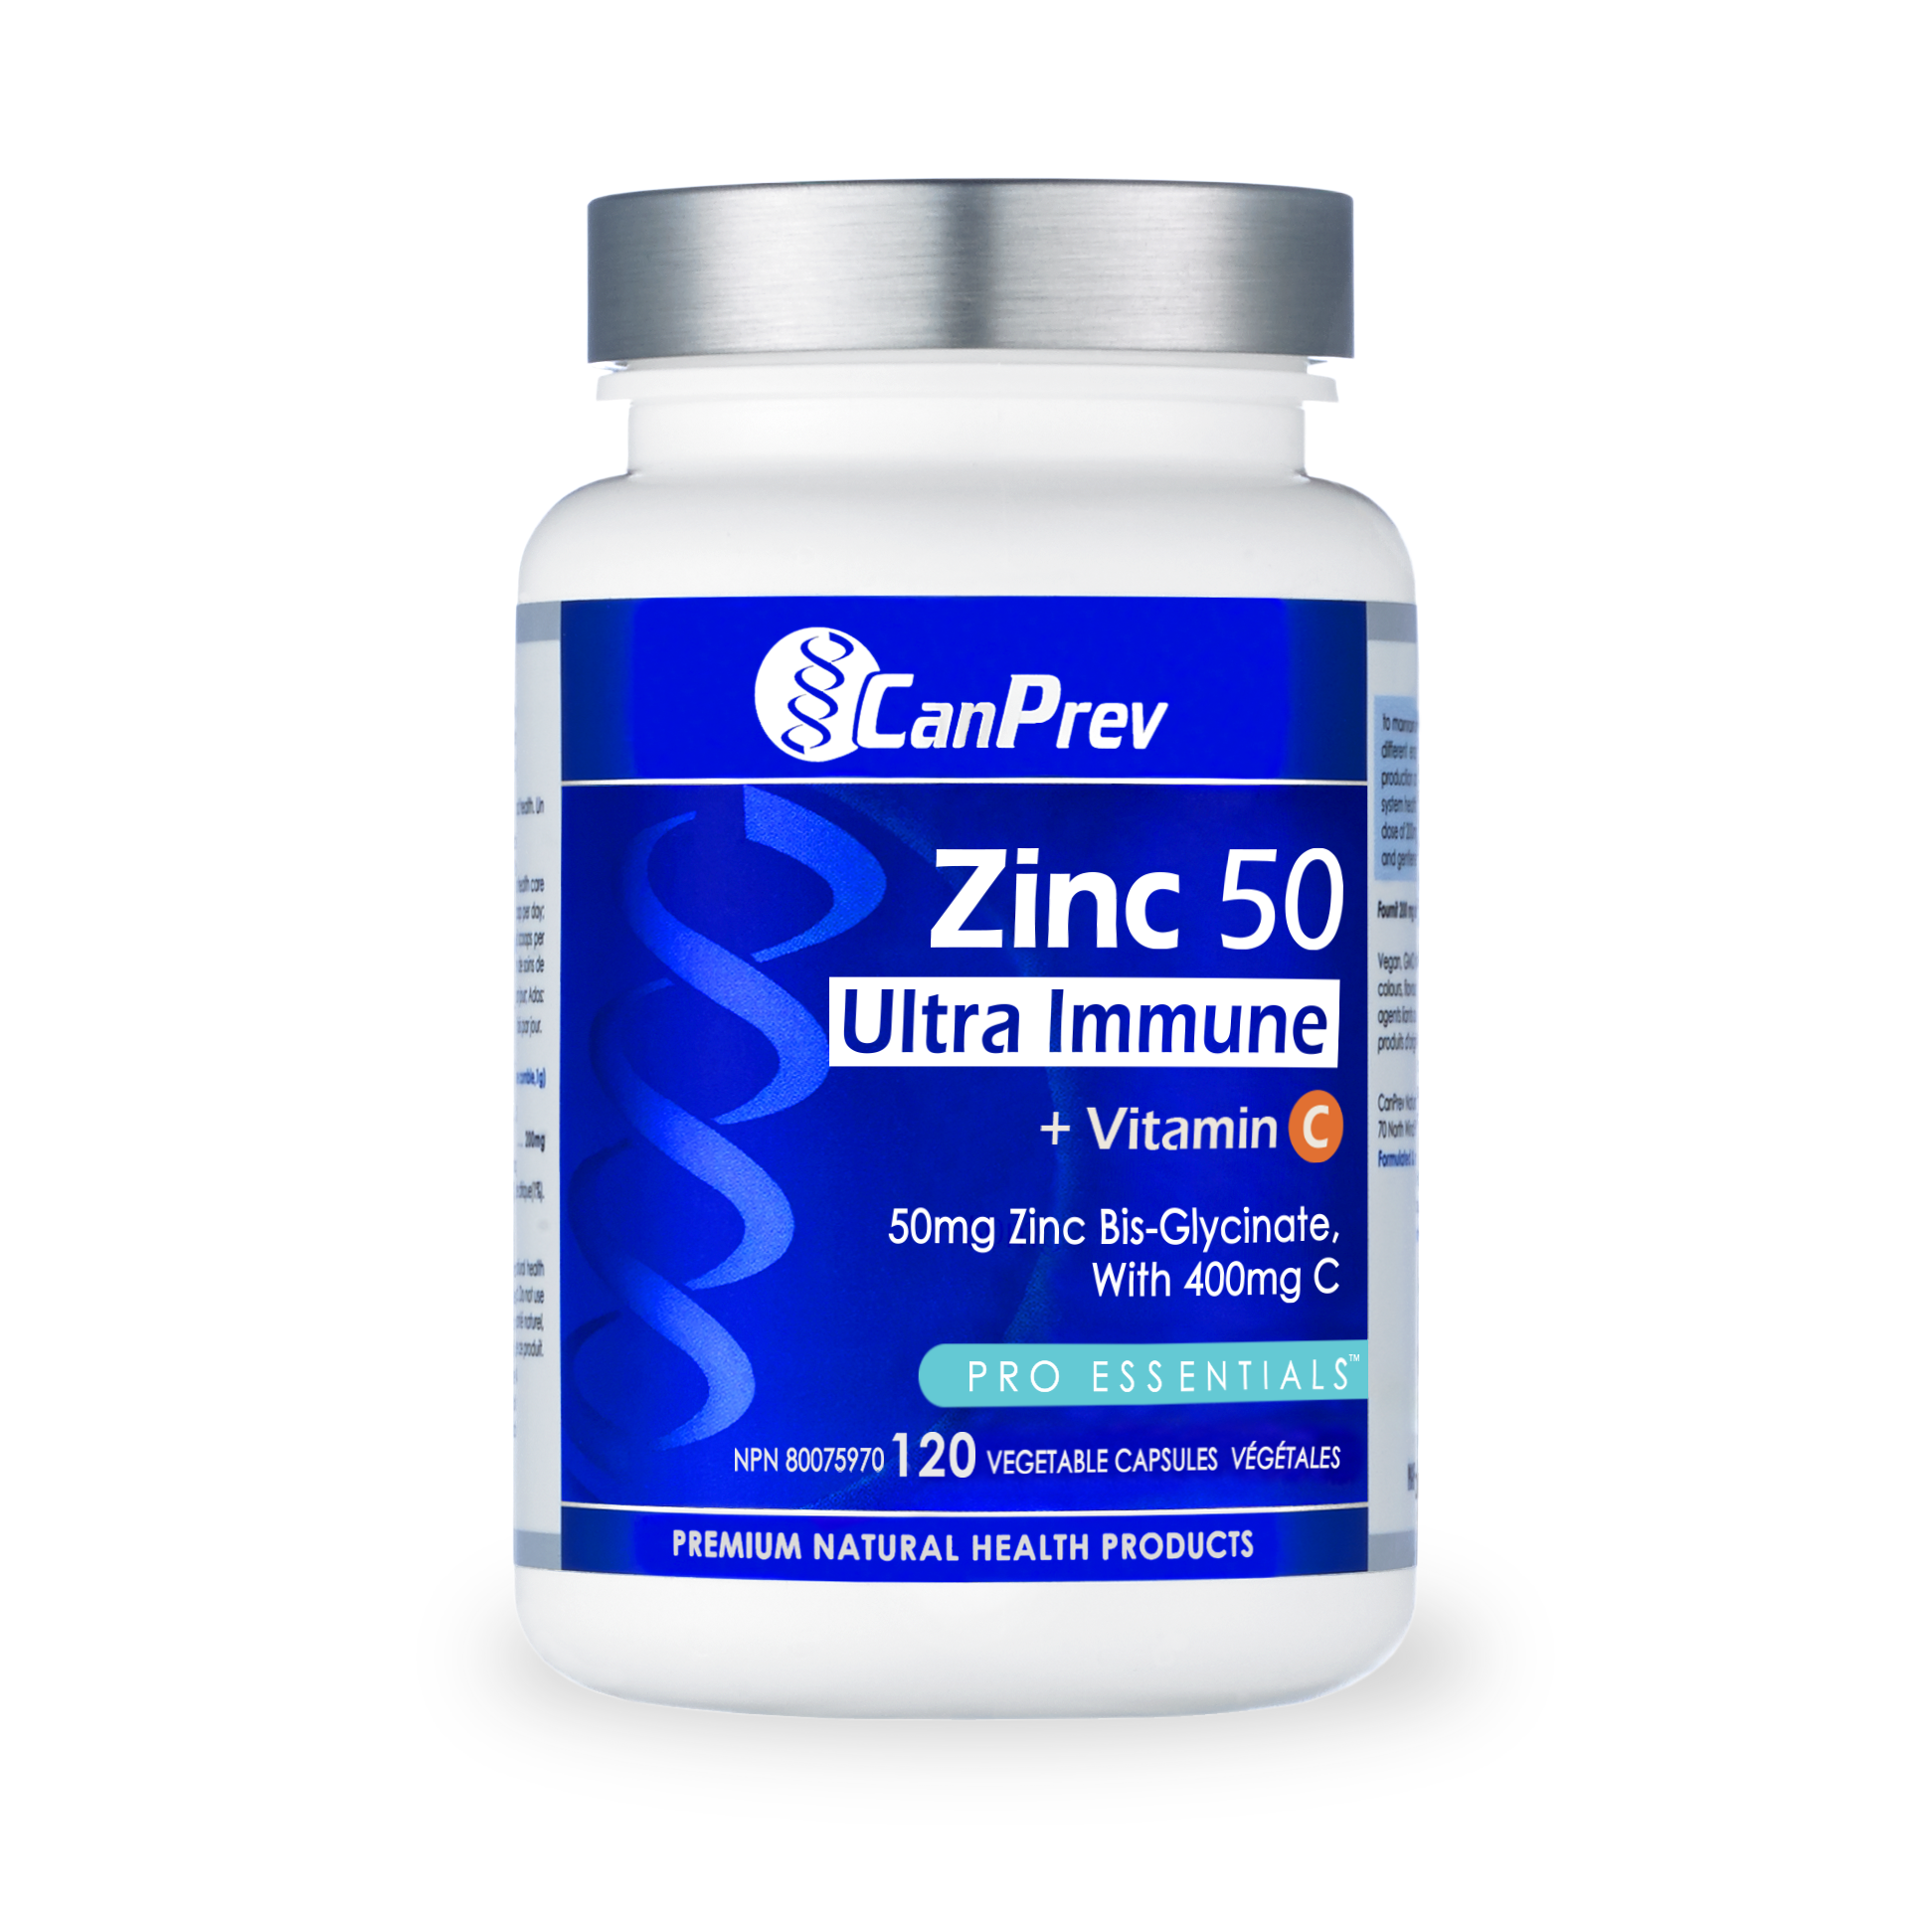 CanPrev Zinc 50 Ultra Immune + Vitamin C bottle